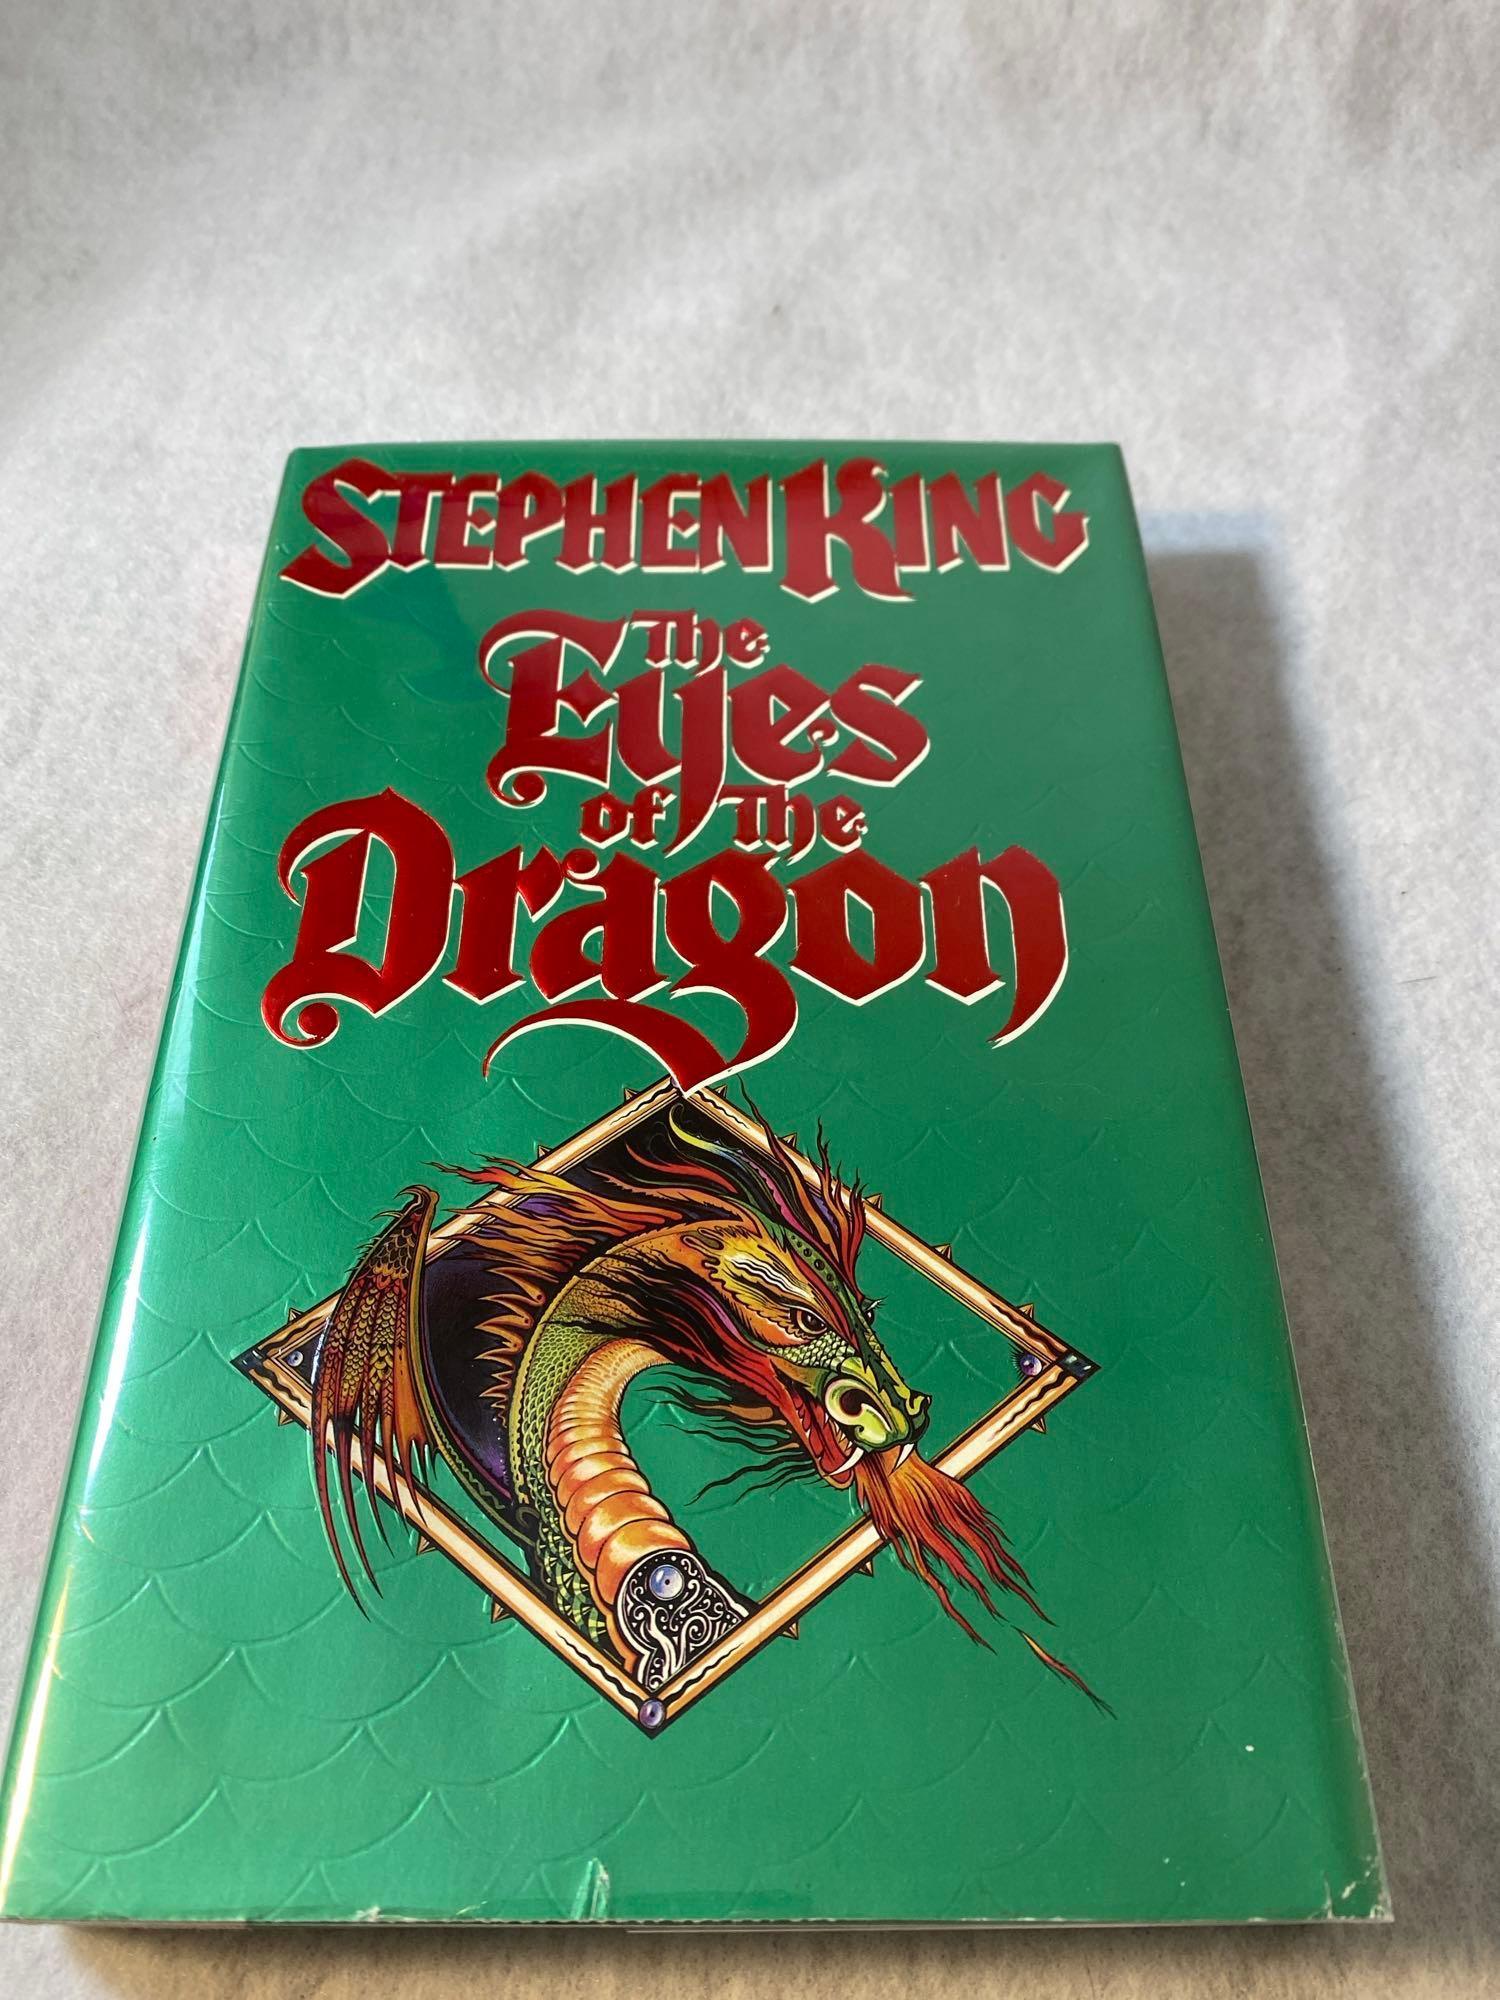 Seven Assorted Hard Cover Stephen King Novels